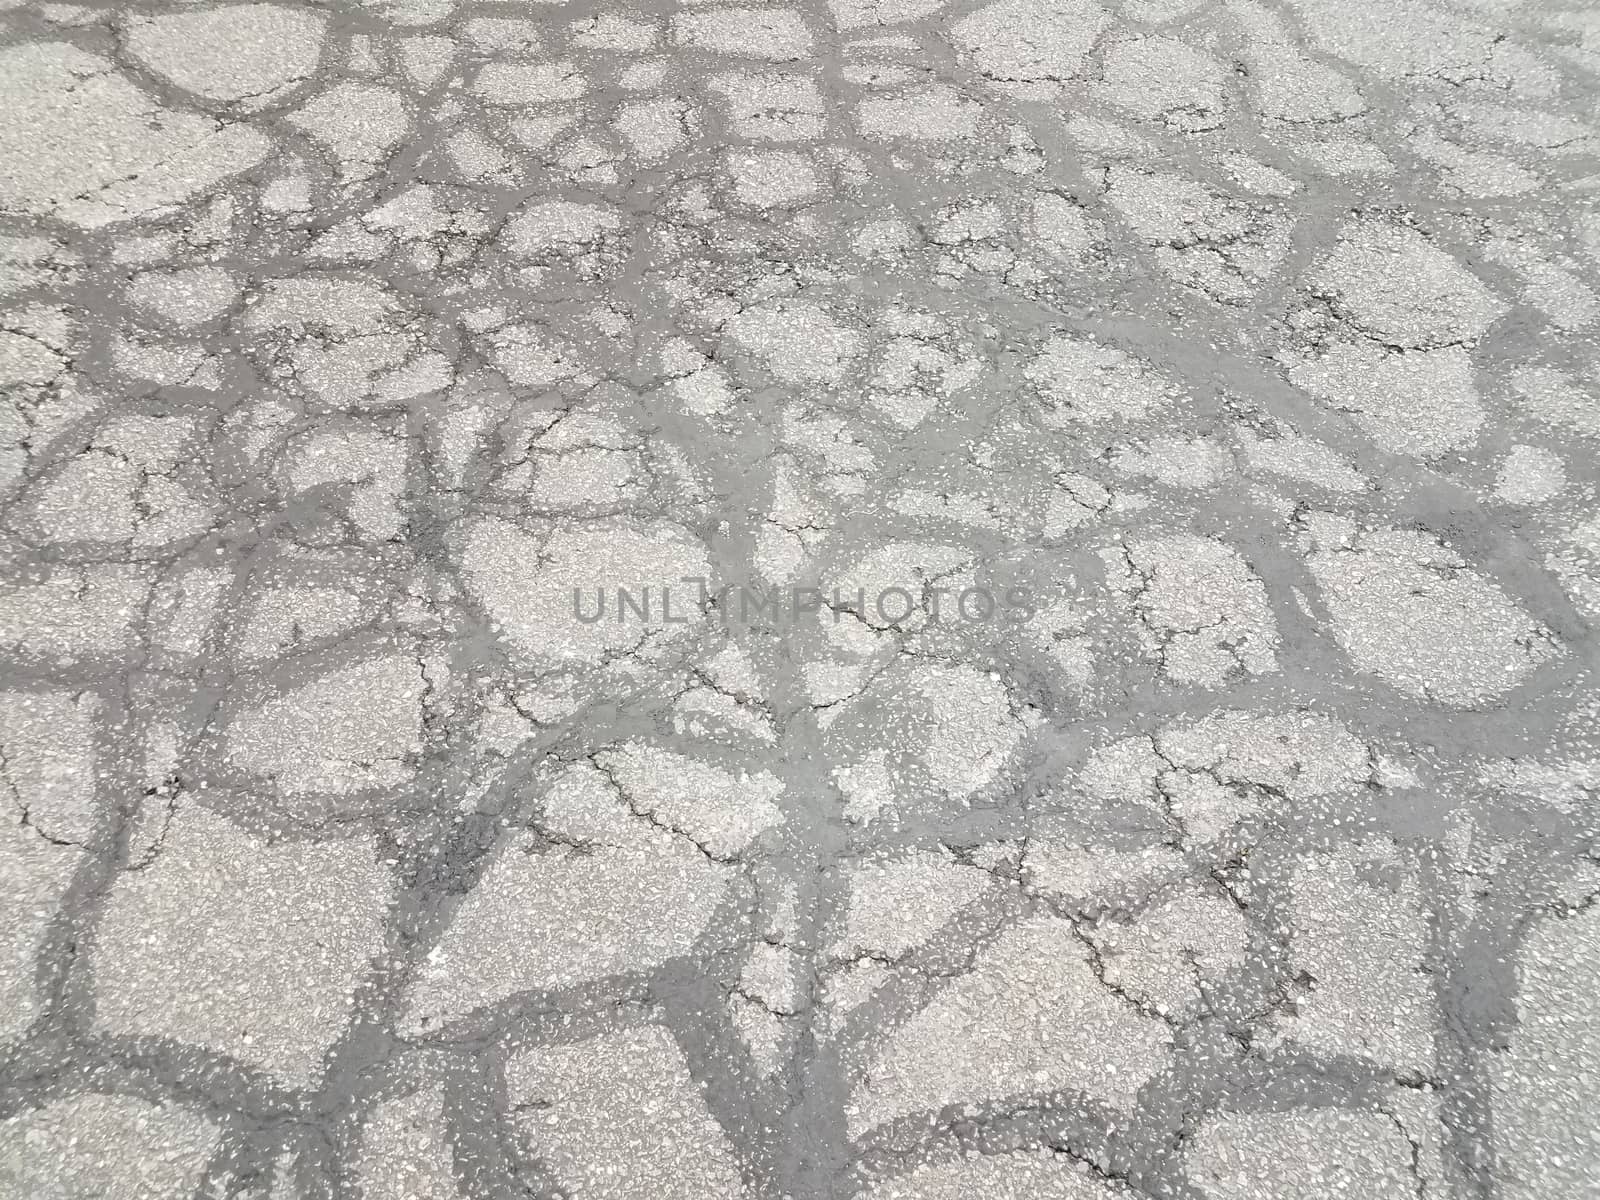 cracks and lines in damaged black asphalt or pavement by stockphotofan1